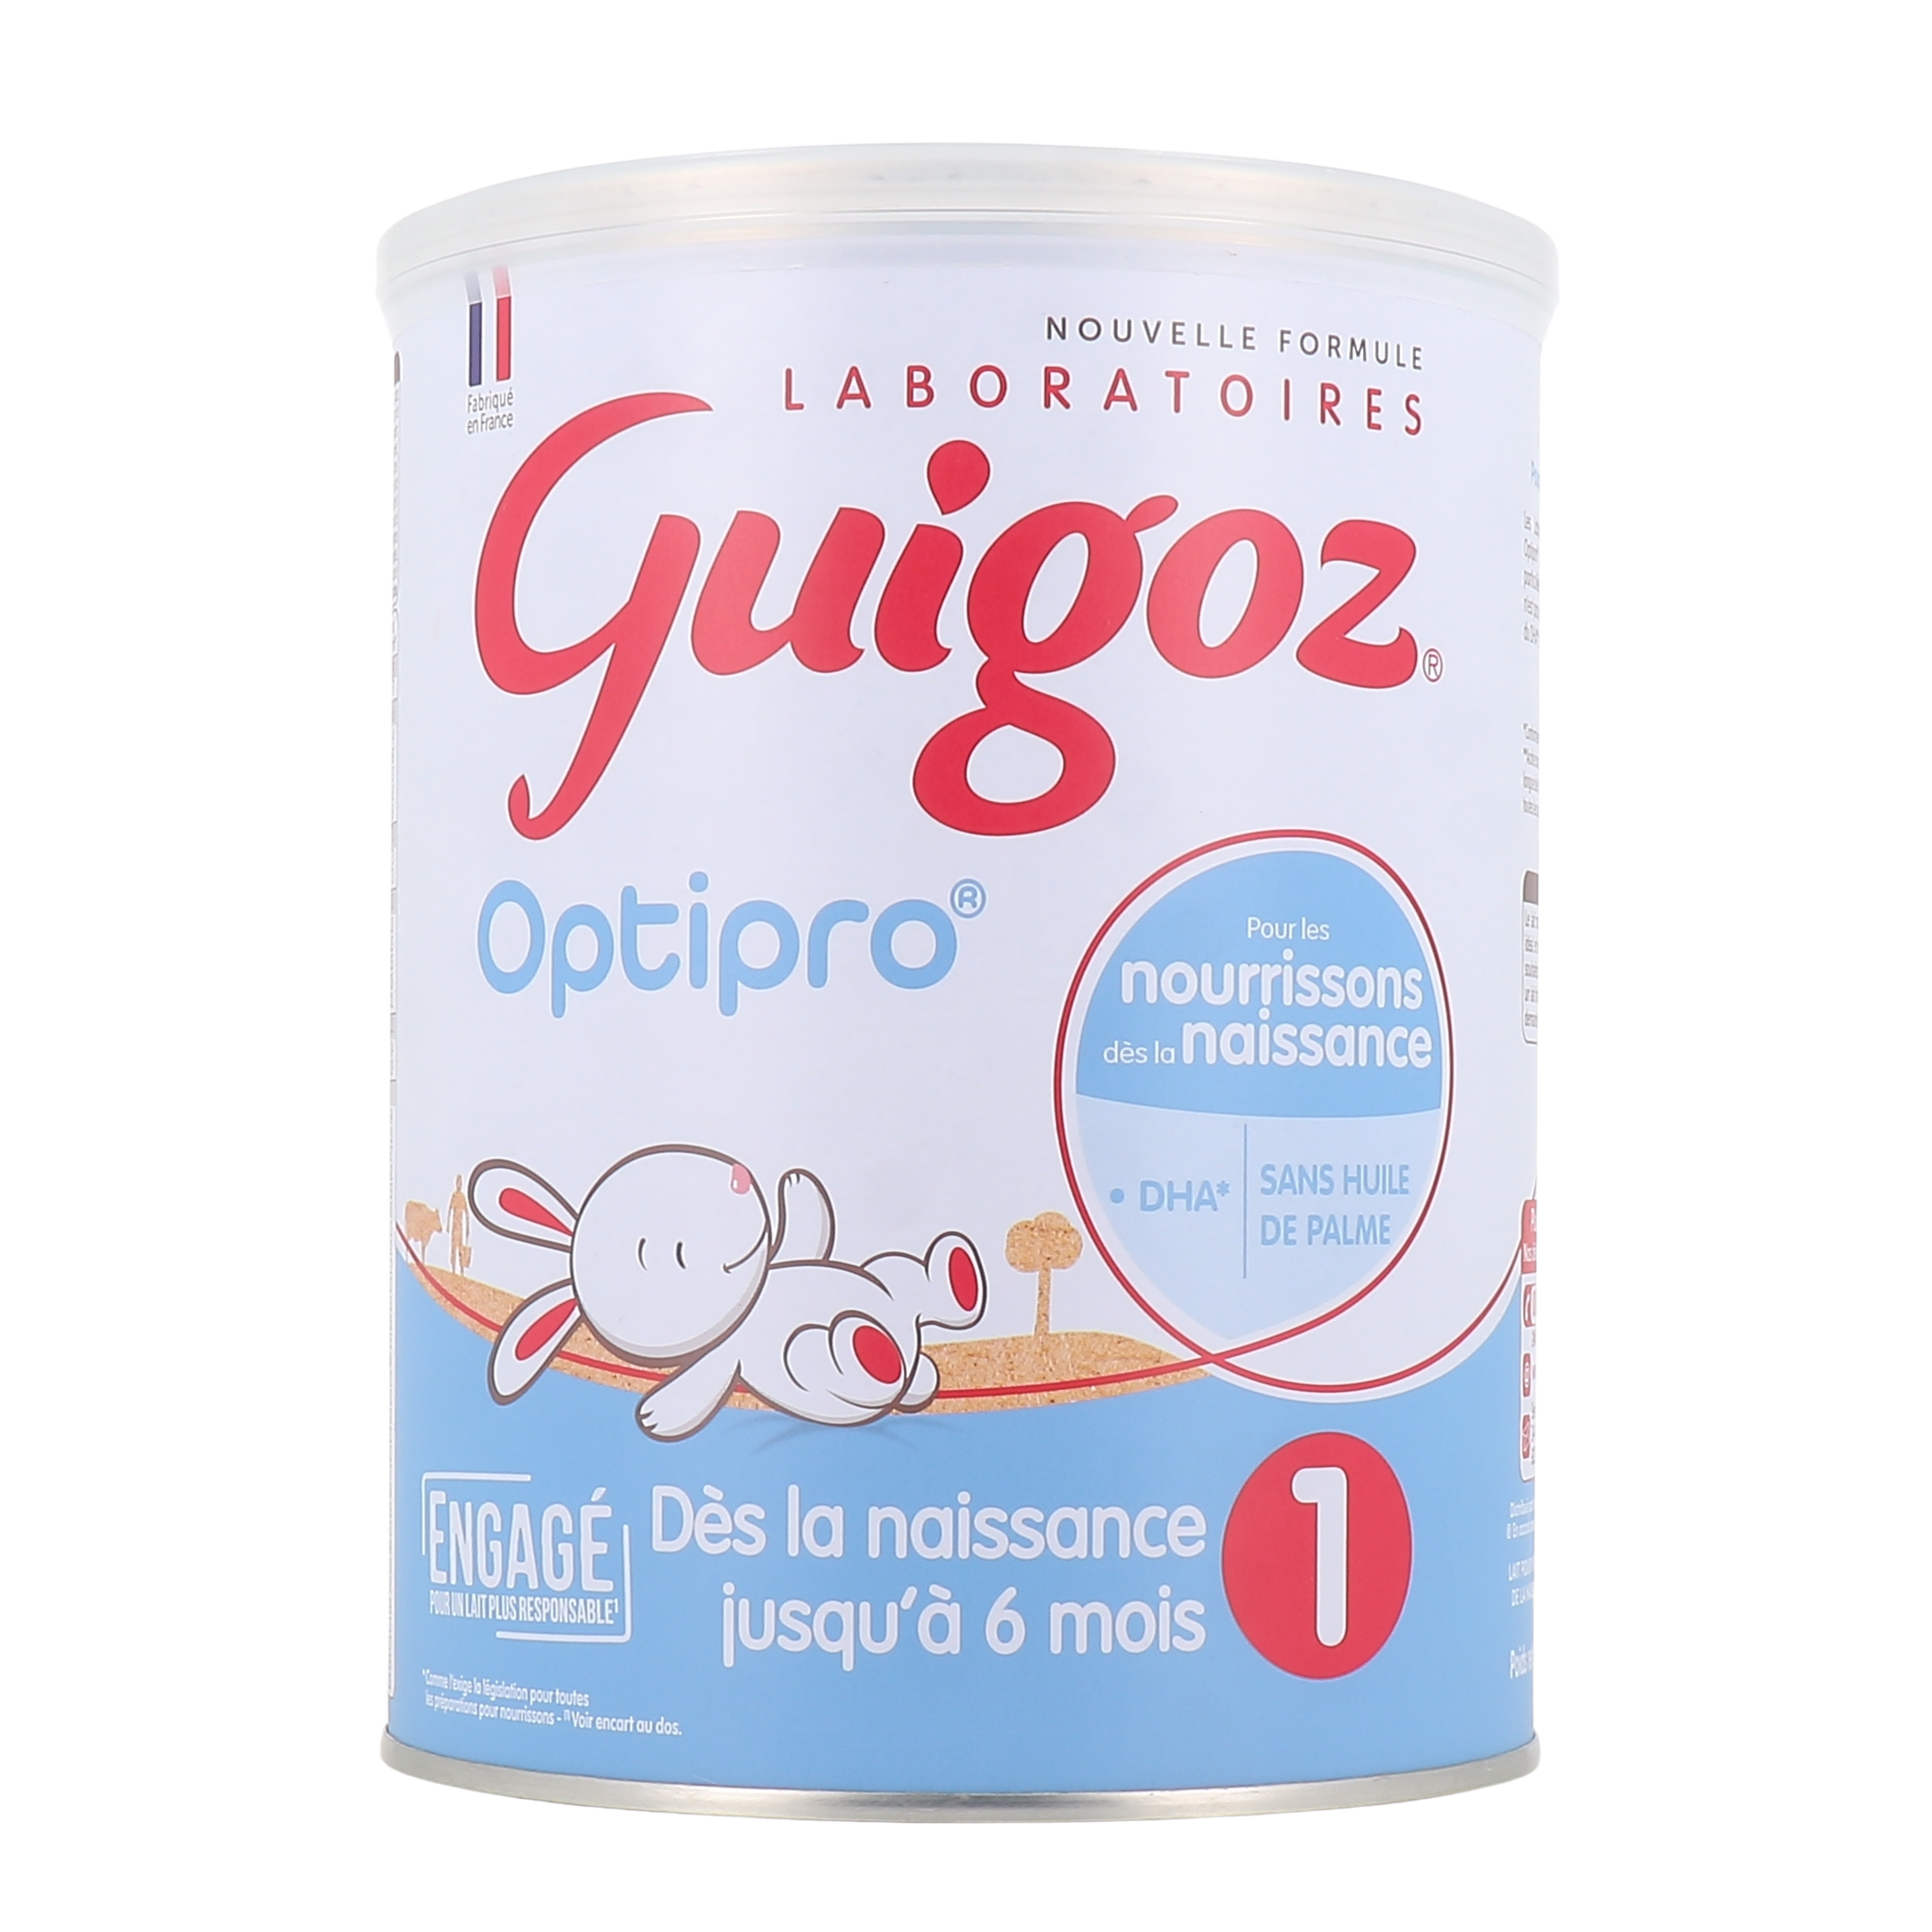 Guigoz Bio lait 1er âge - Sans huile de palme, source de DHA